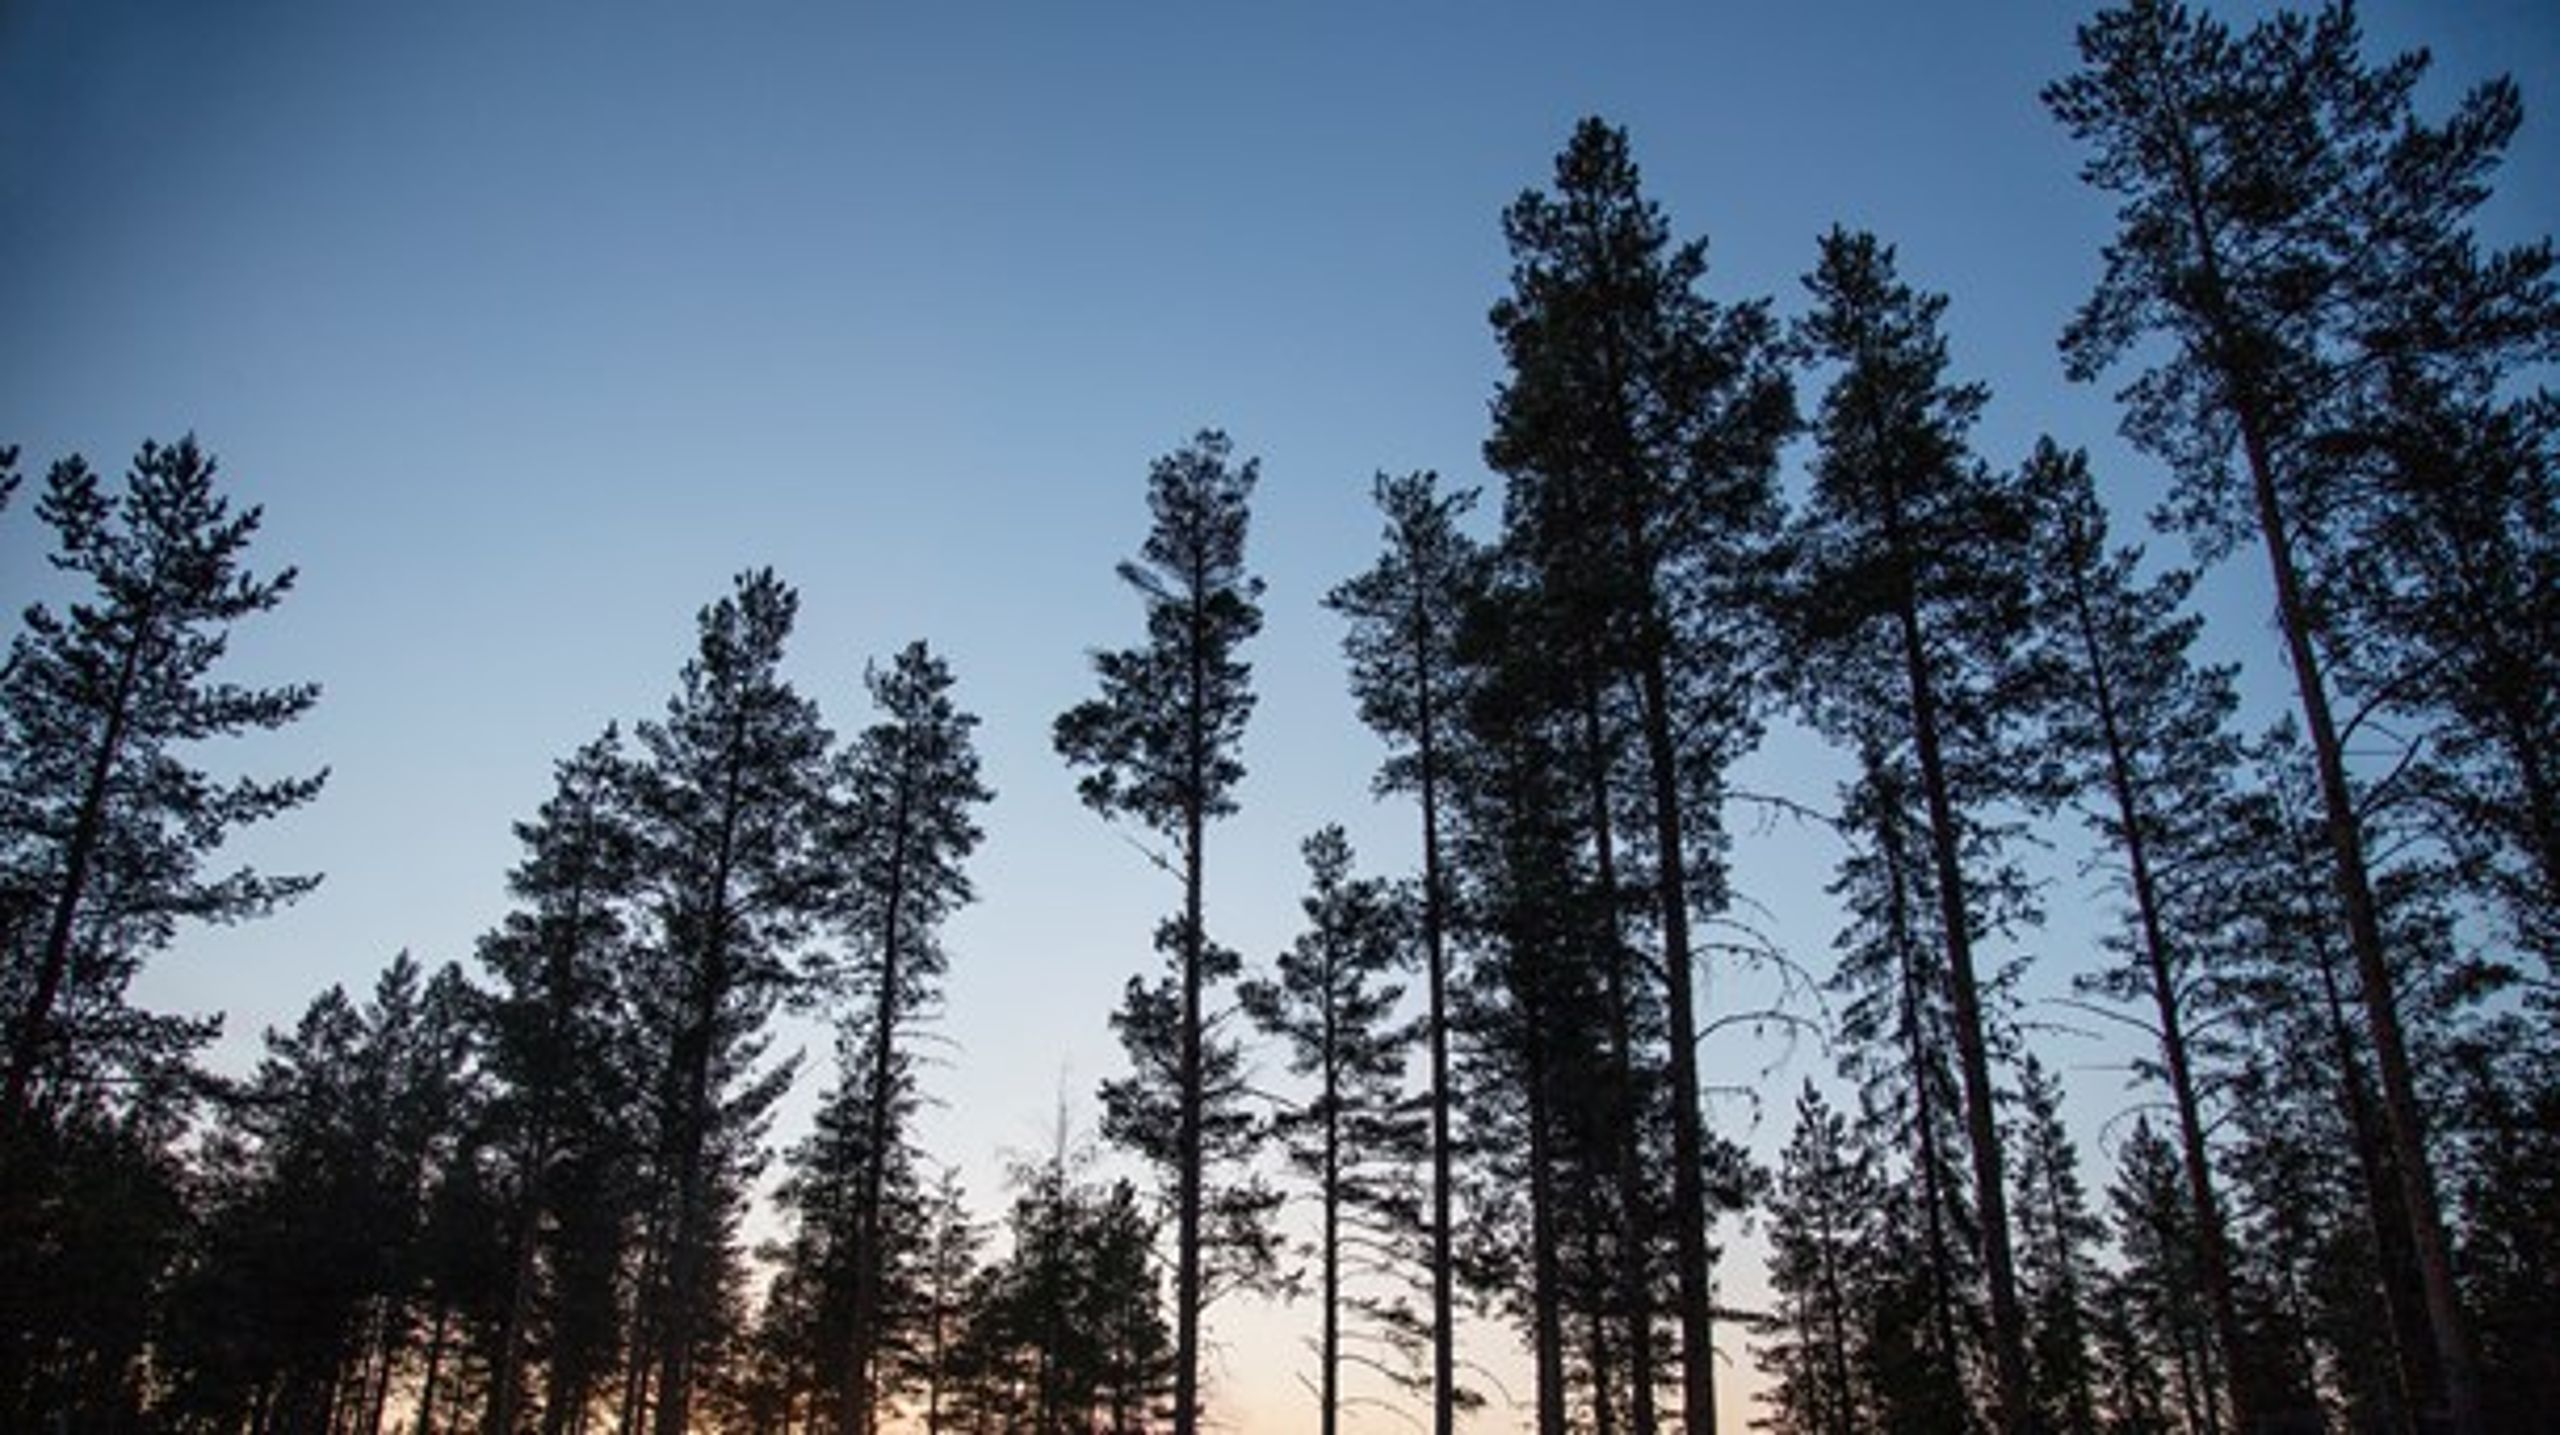 EU:s skogsstrategi måste värna skogens klimatnytta och främja förutsättningarna för det hållbara svenska skogsbruket, skriver Moderaterna.&nbsp;